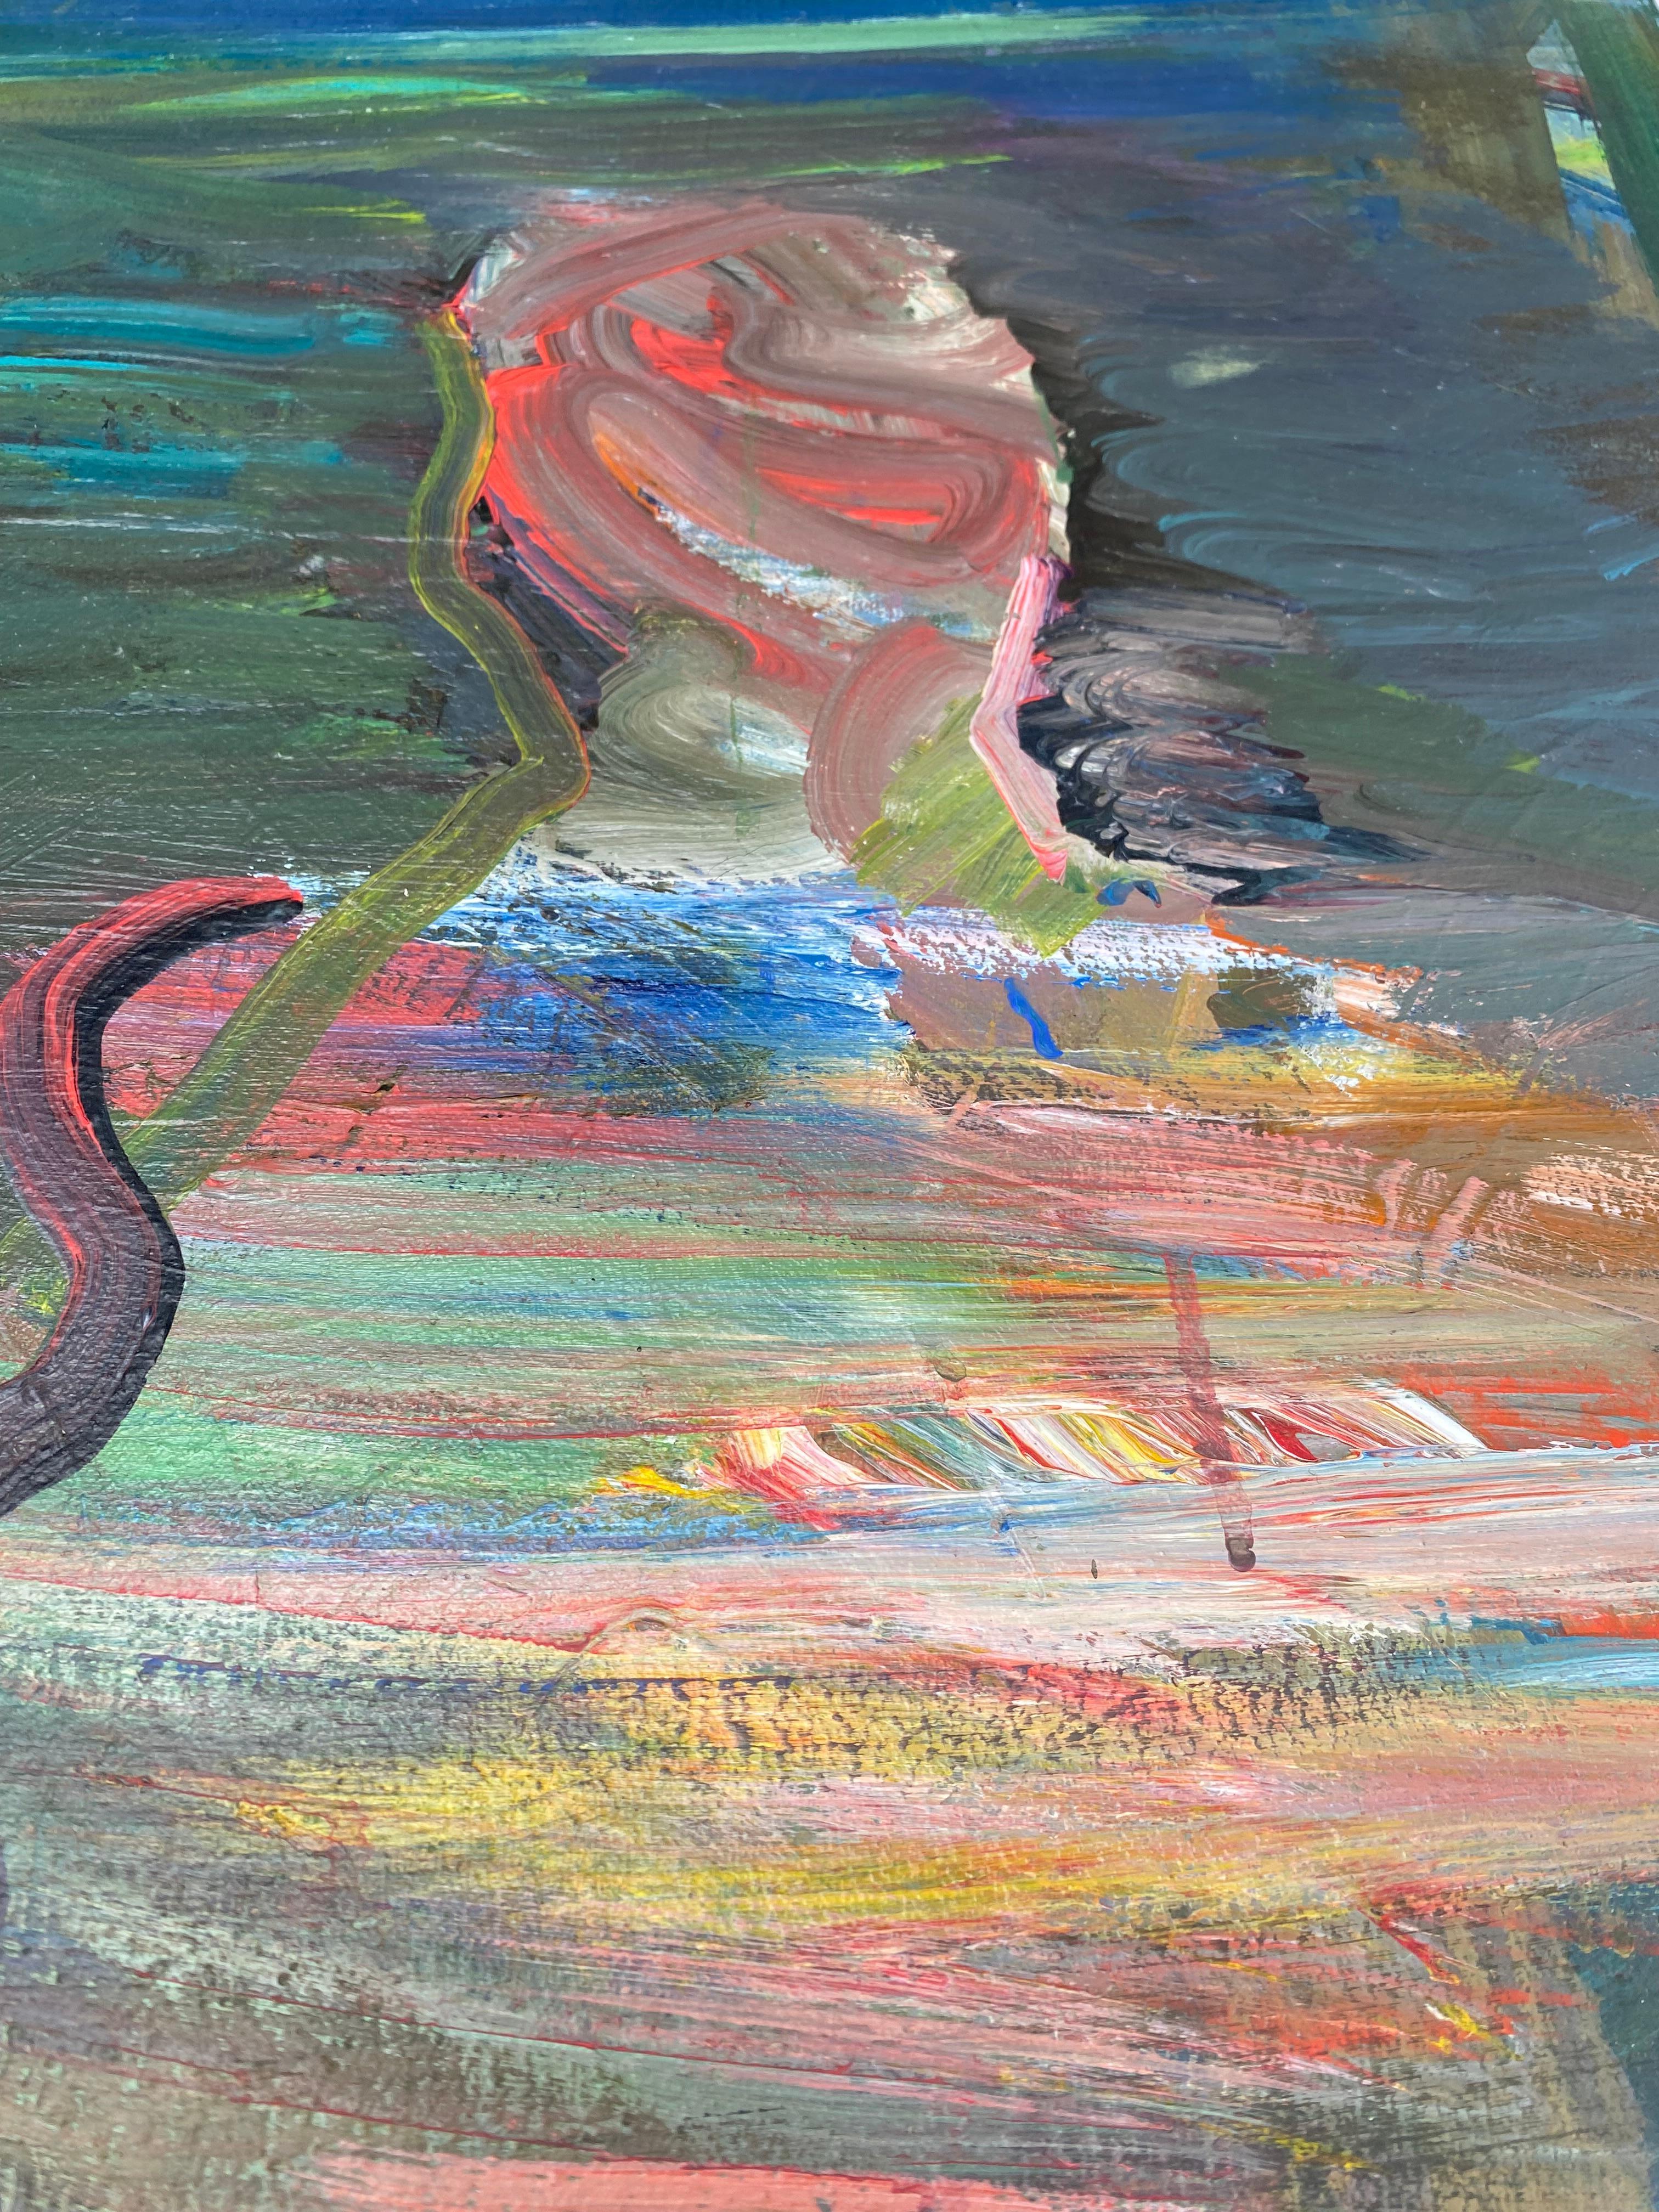 Vintage Warren Fischer figurative abstrakte Malerei auf Leinen Leinwand.

Zum Verkauf angeboten wird ein figuratives abstraktes Gemälde auf Leinen von dem amerikanischen Künstler Warren Fischer (1943-2001). Das Gemälde ist Teil des Nachlasses des